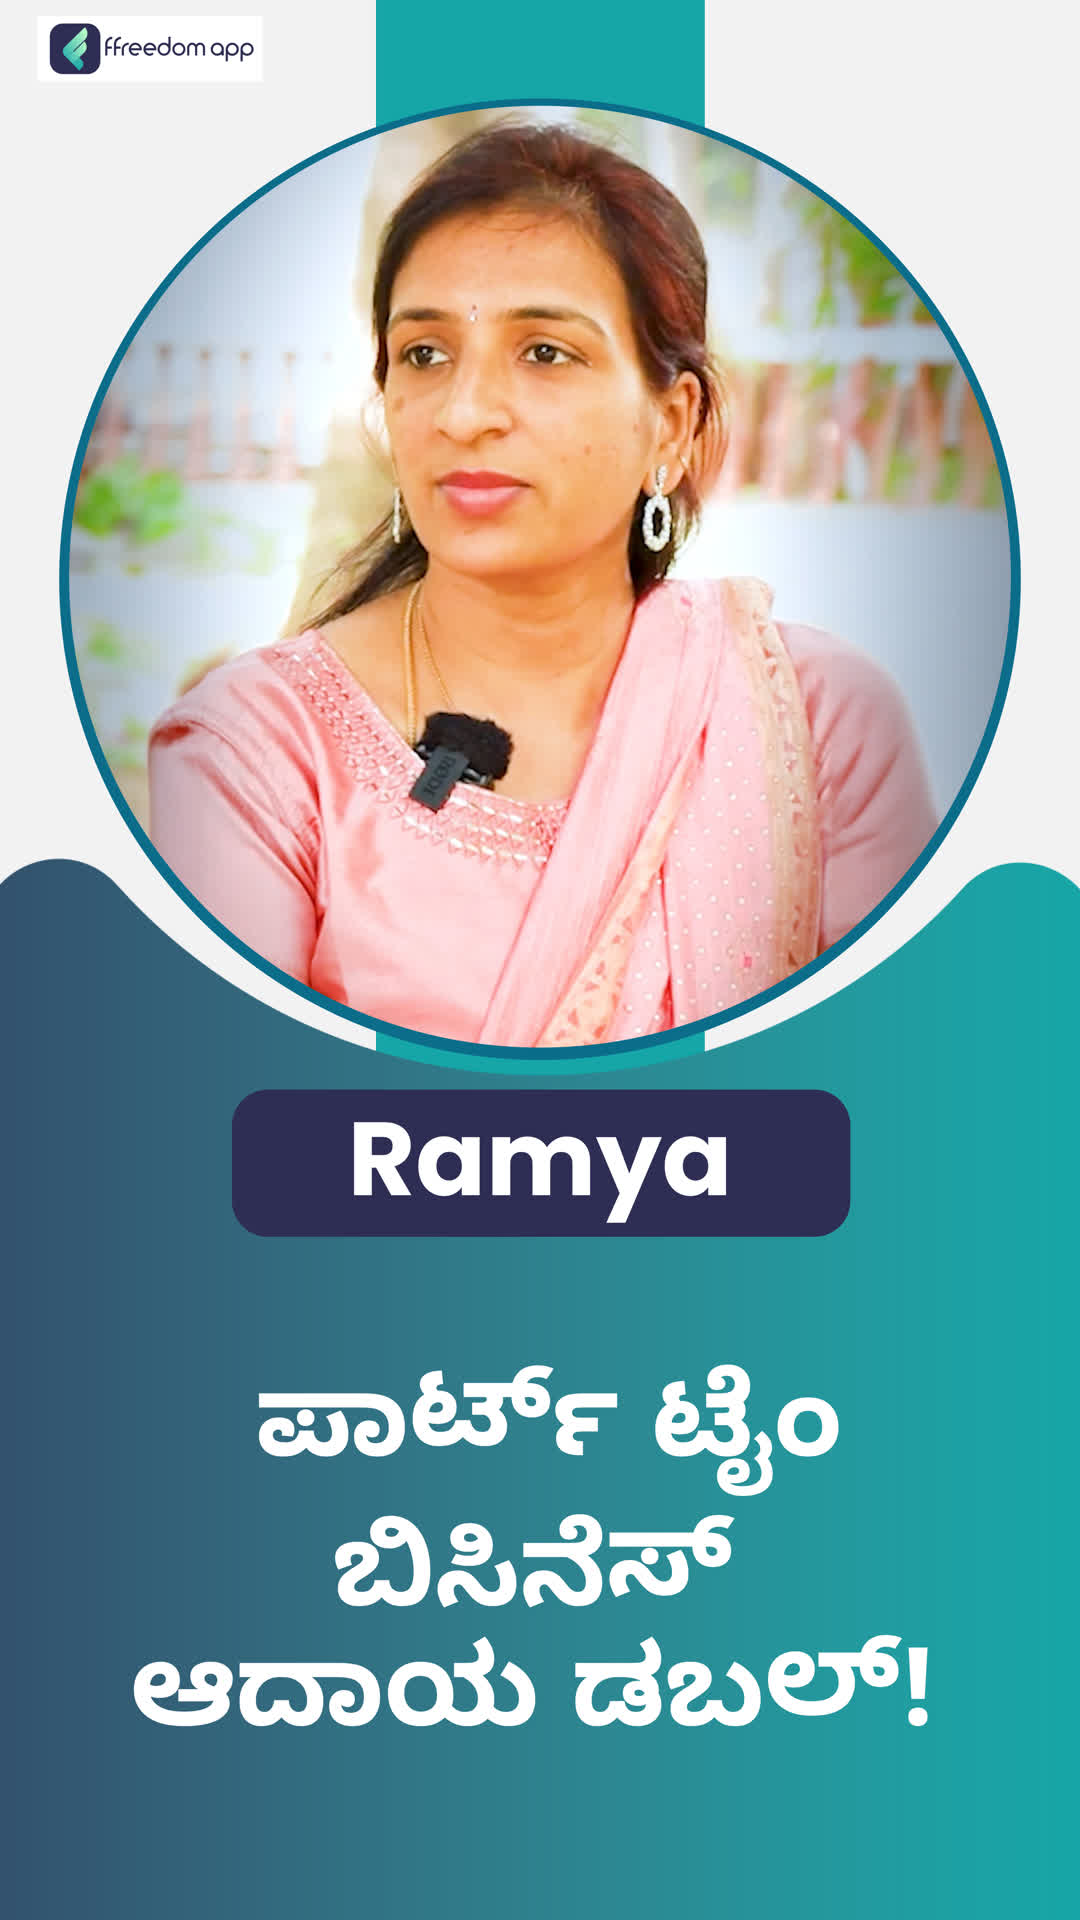 Ramya's Honest Review of ffreedom app - Ballari ,Karnataka